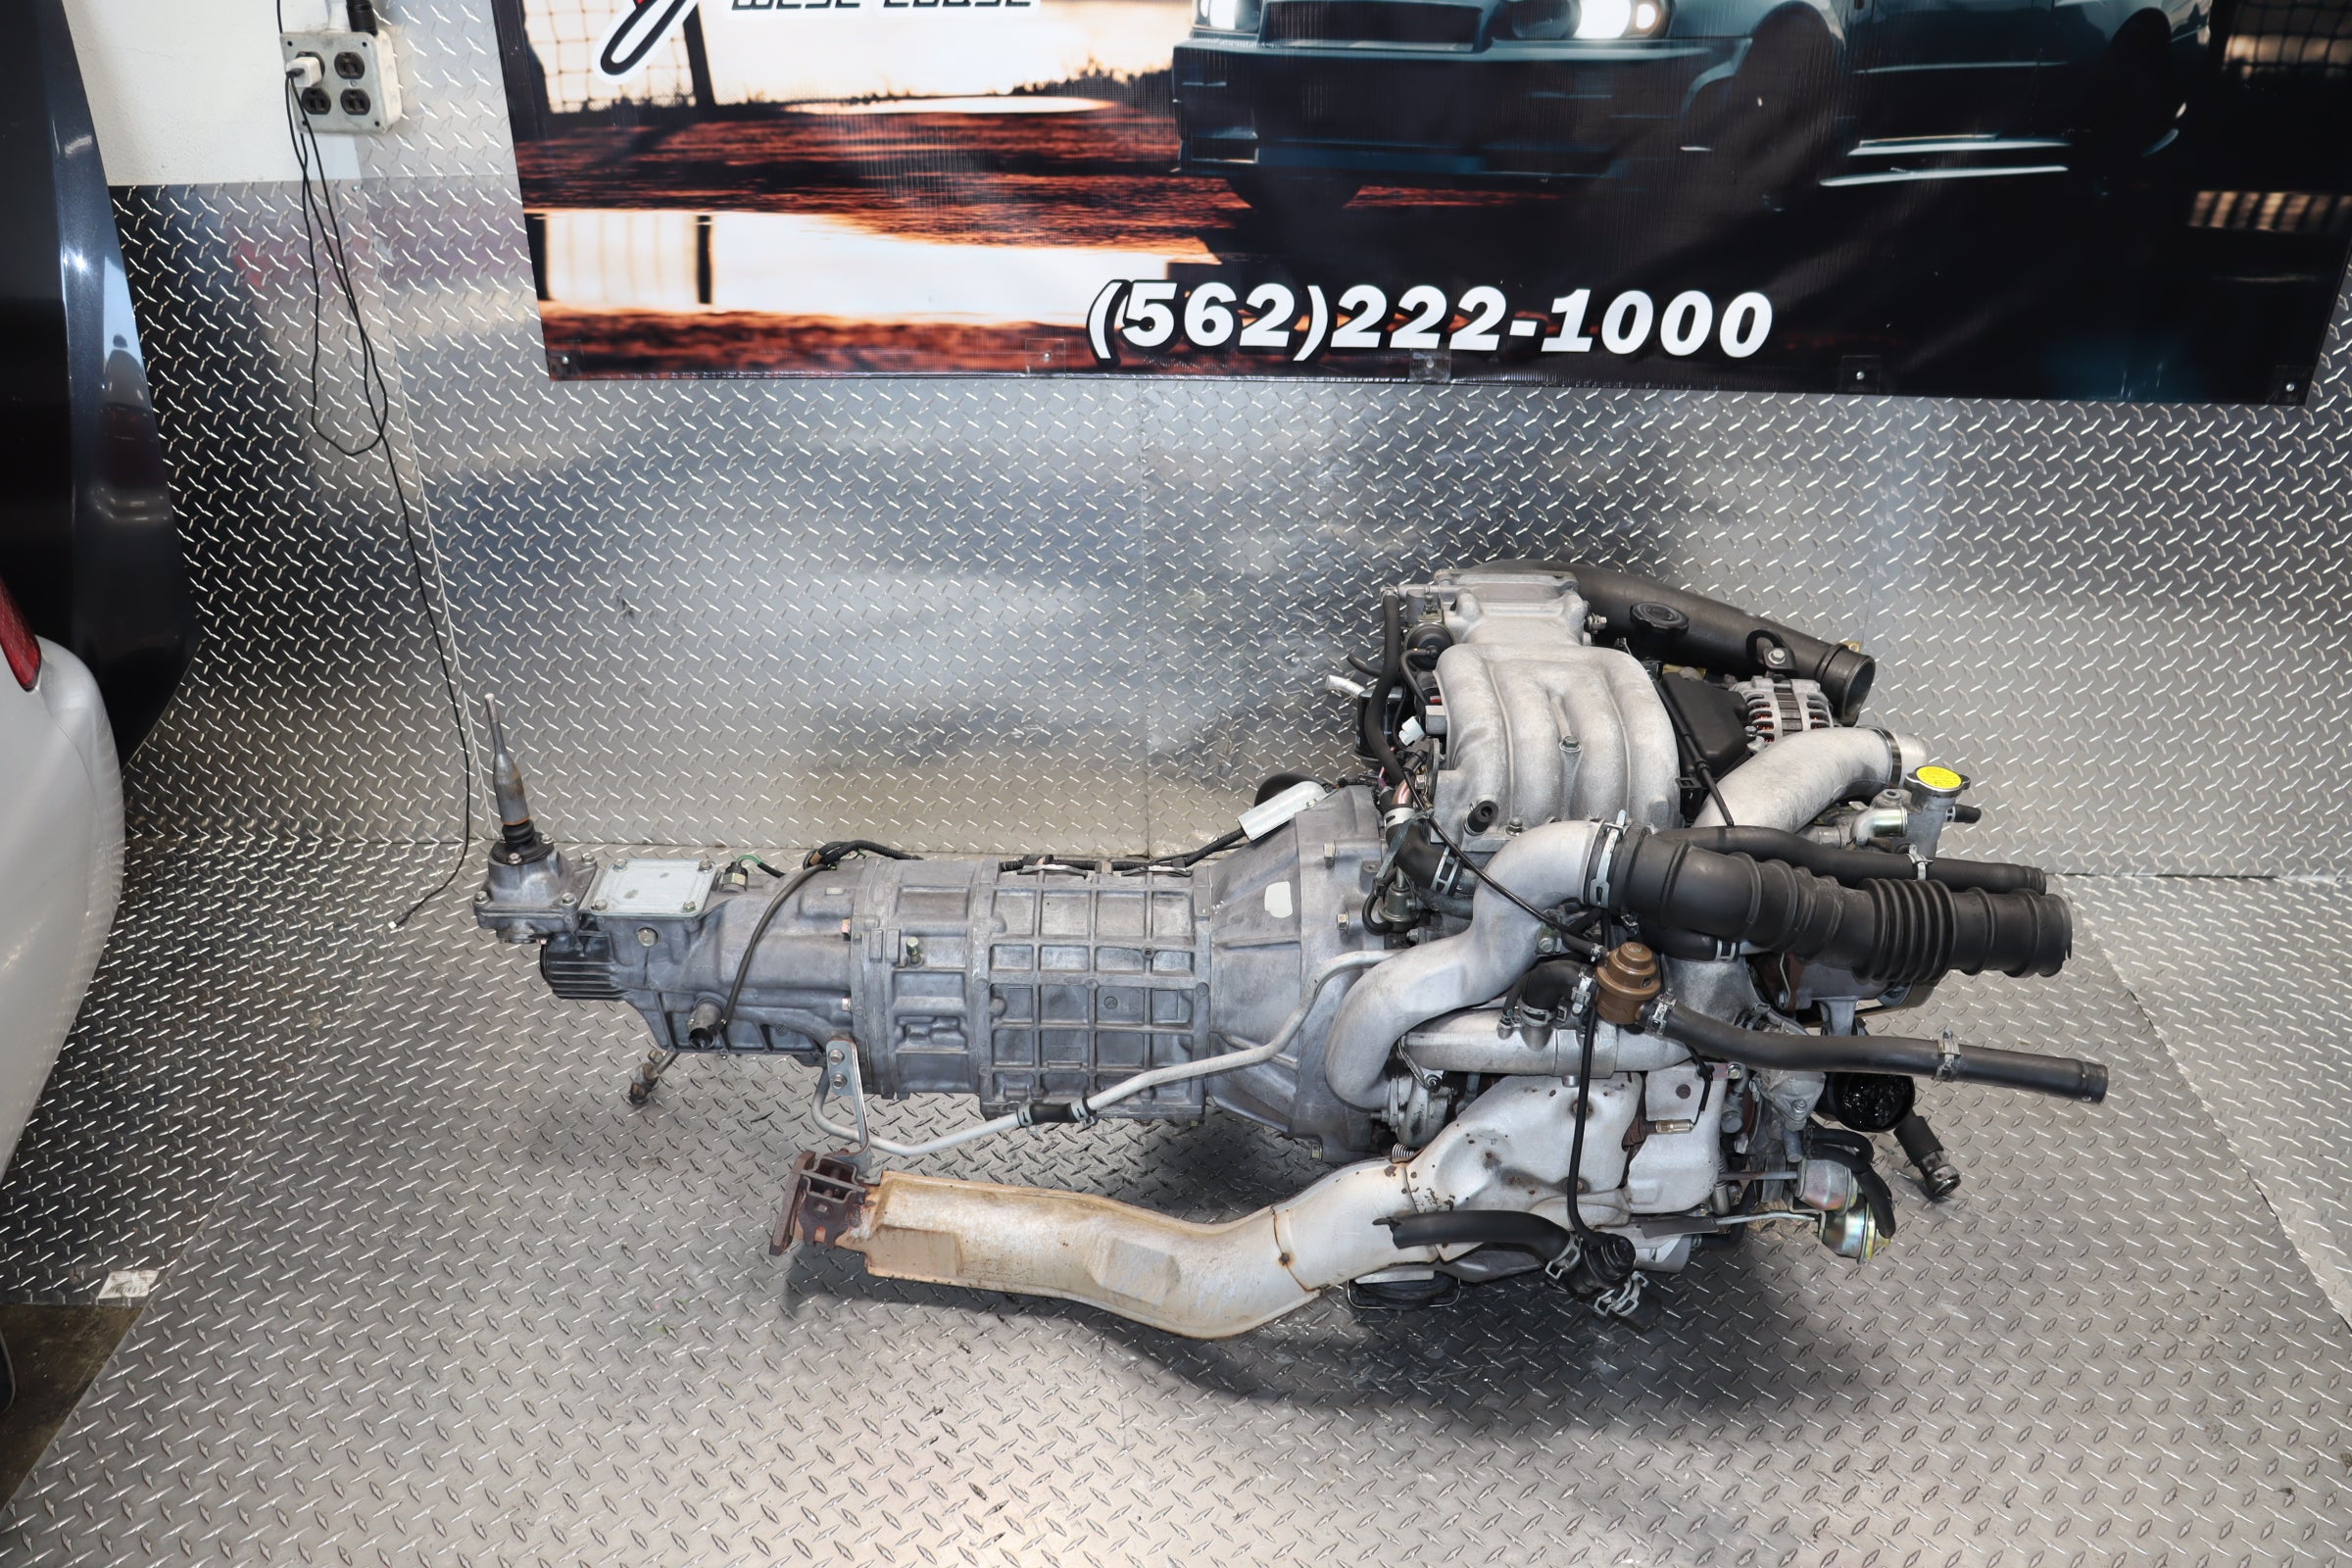 JDM 13B Mazda Rx-7 Engine 1.3L Twin-Turbo FD3S 93-95 Rotary 5 